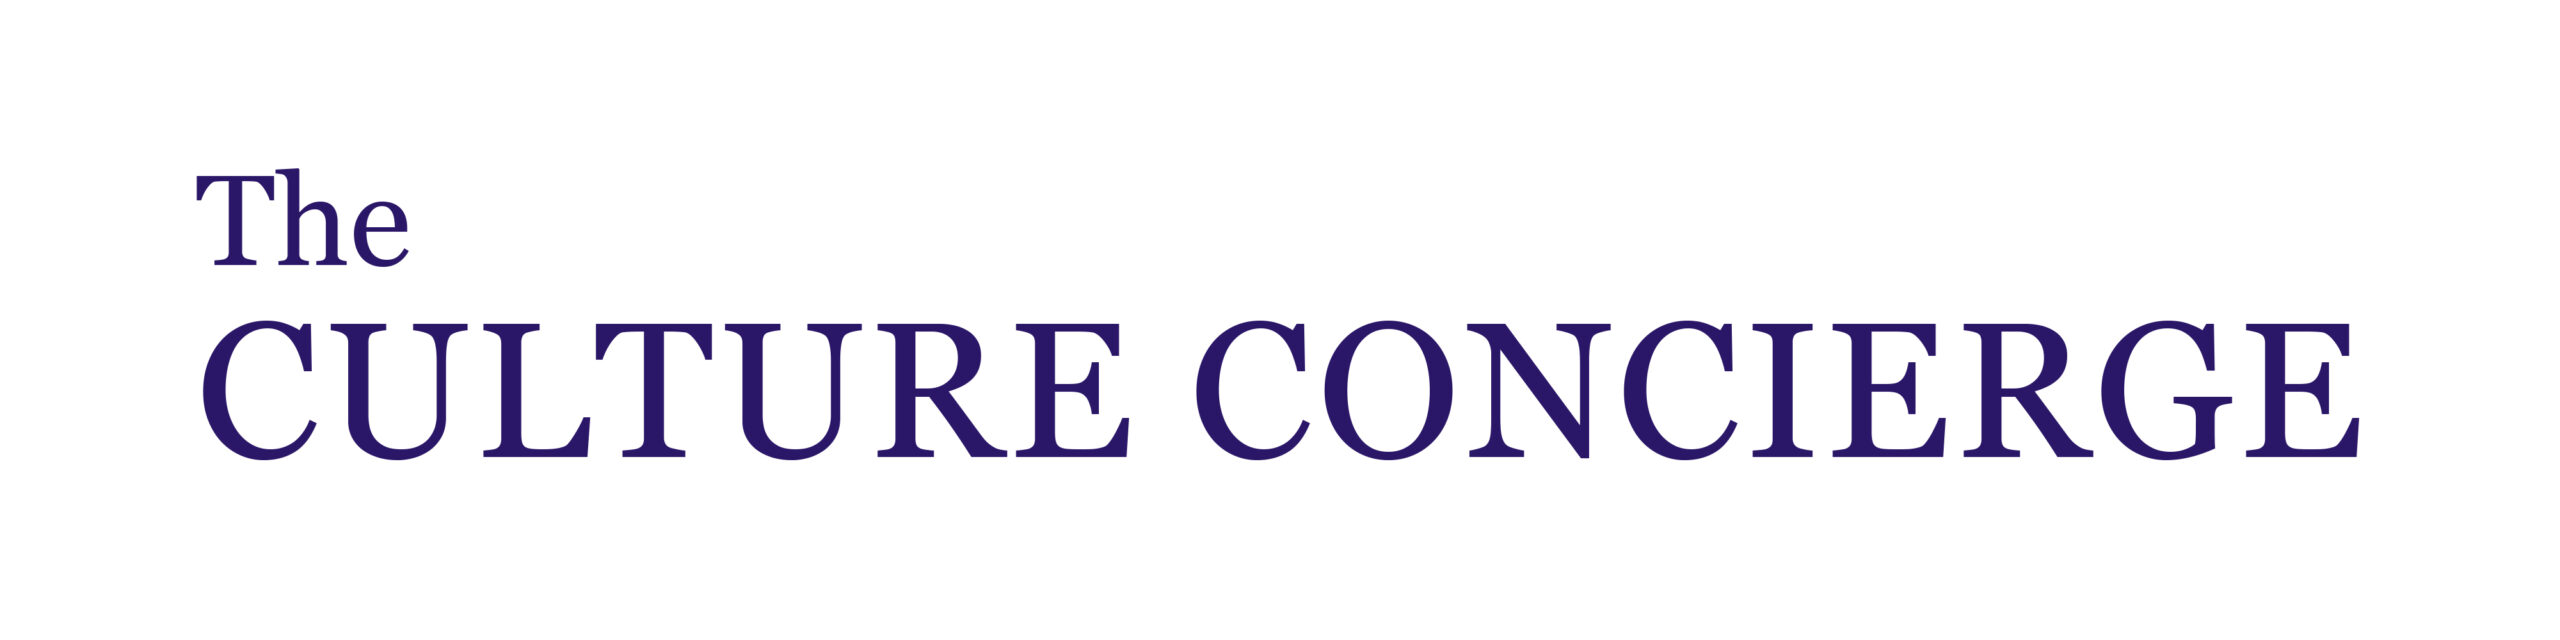 The-Culture-Concierge-Logo-Line-Purple